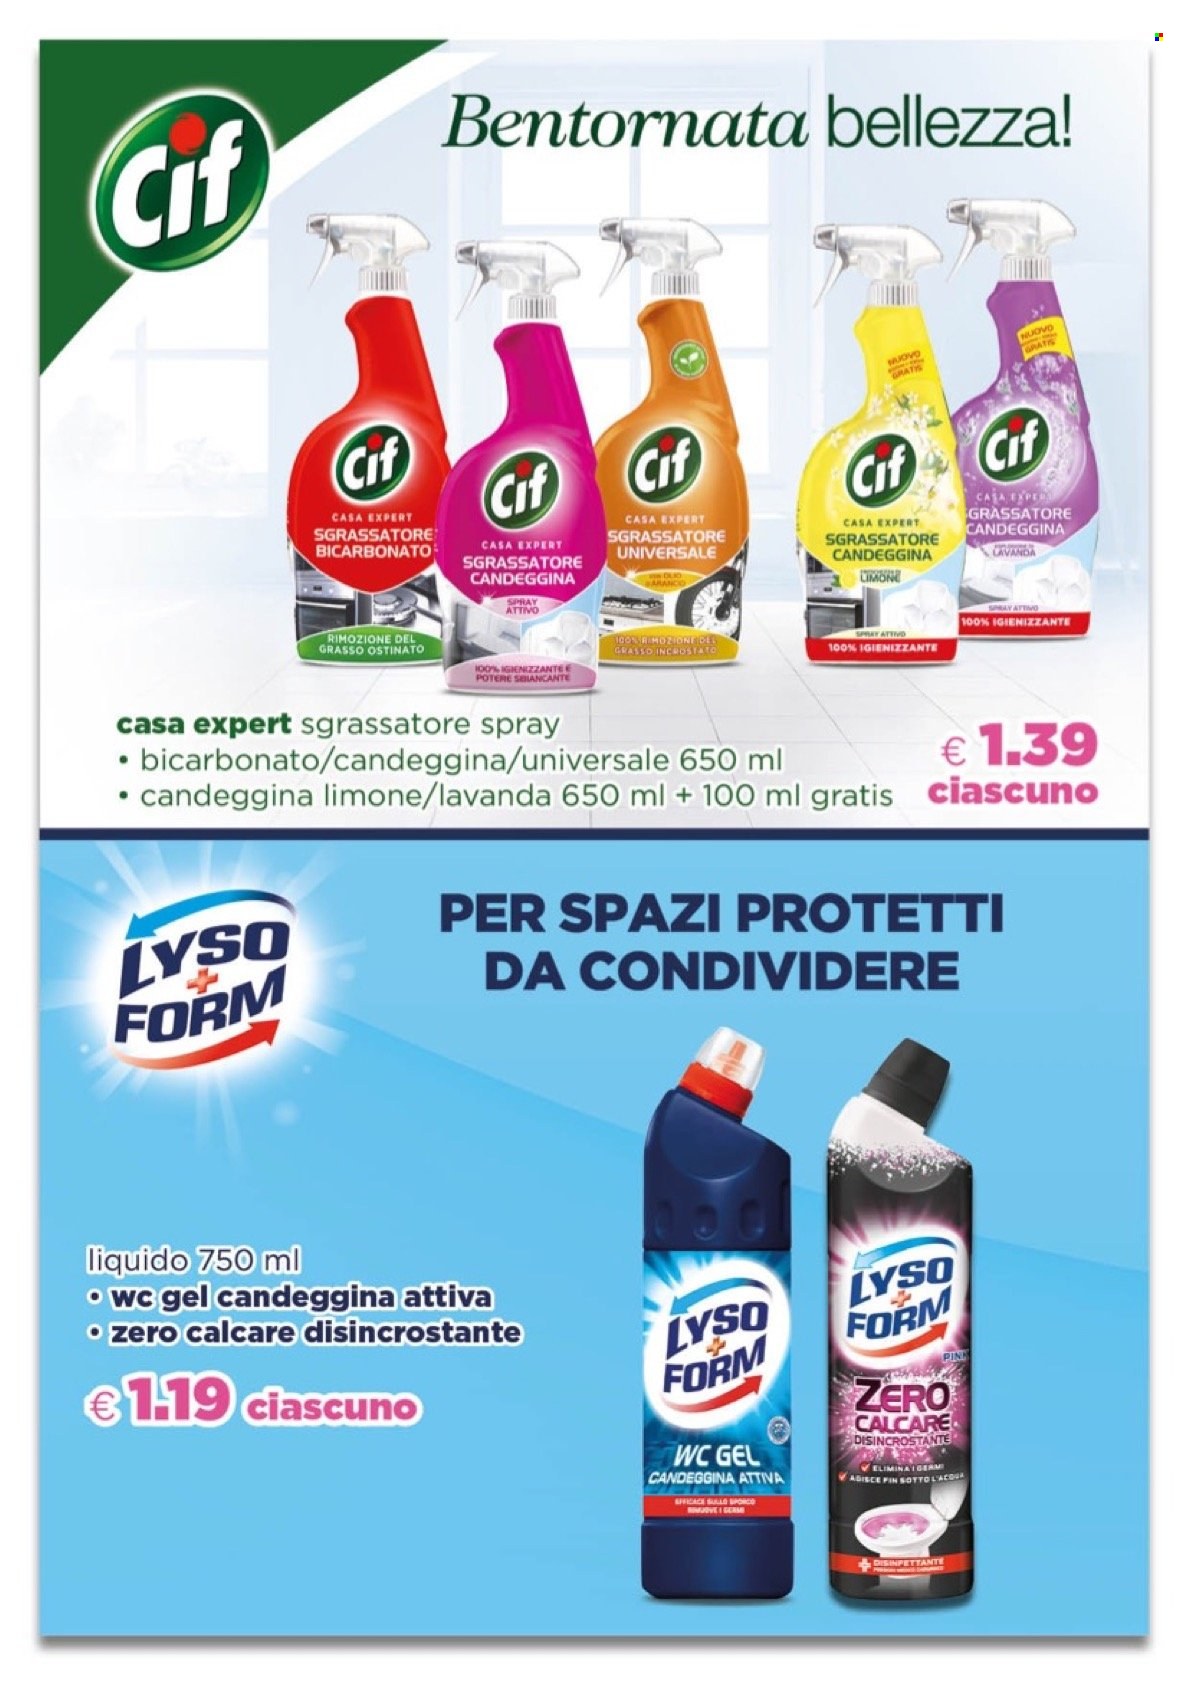 thumbnail - Volantino Acqua & Sapone - 7/11/2021 - 28/11/2021 - Prodotti in offerta - candeggina, Cif, sgrassatore, igienizzante, detergente WC, disincrostante. Pagina 4.